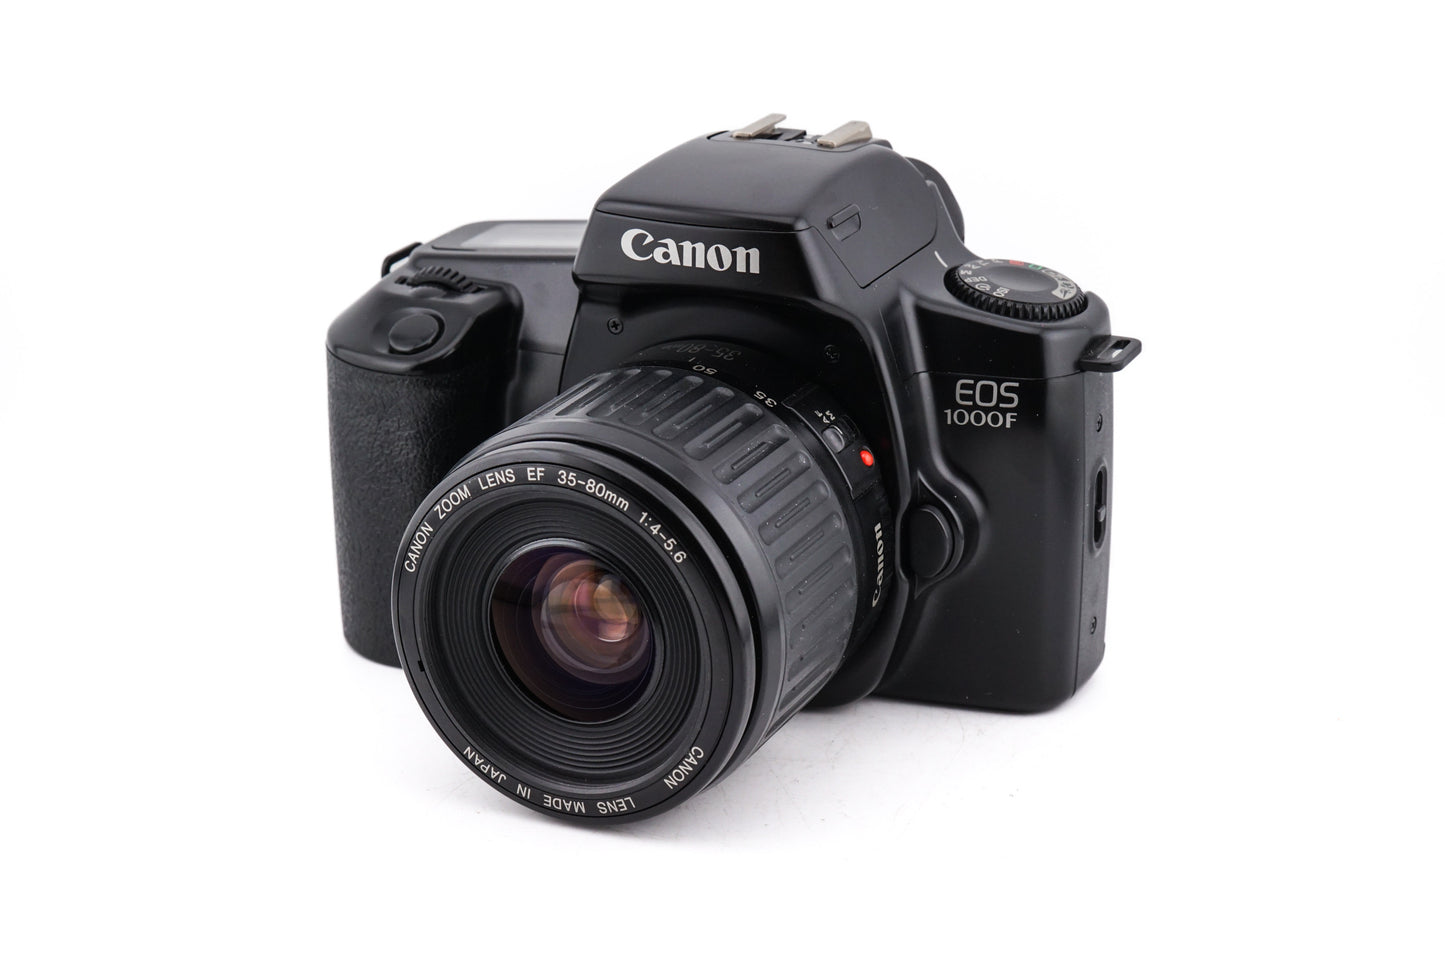 Canon EOS 1000F - Camera